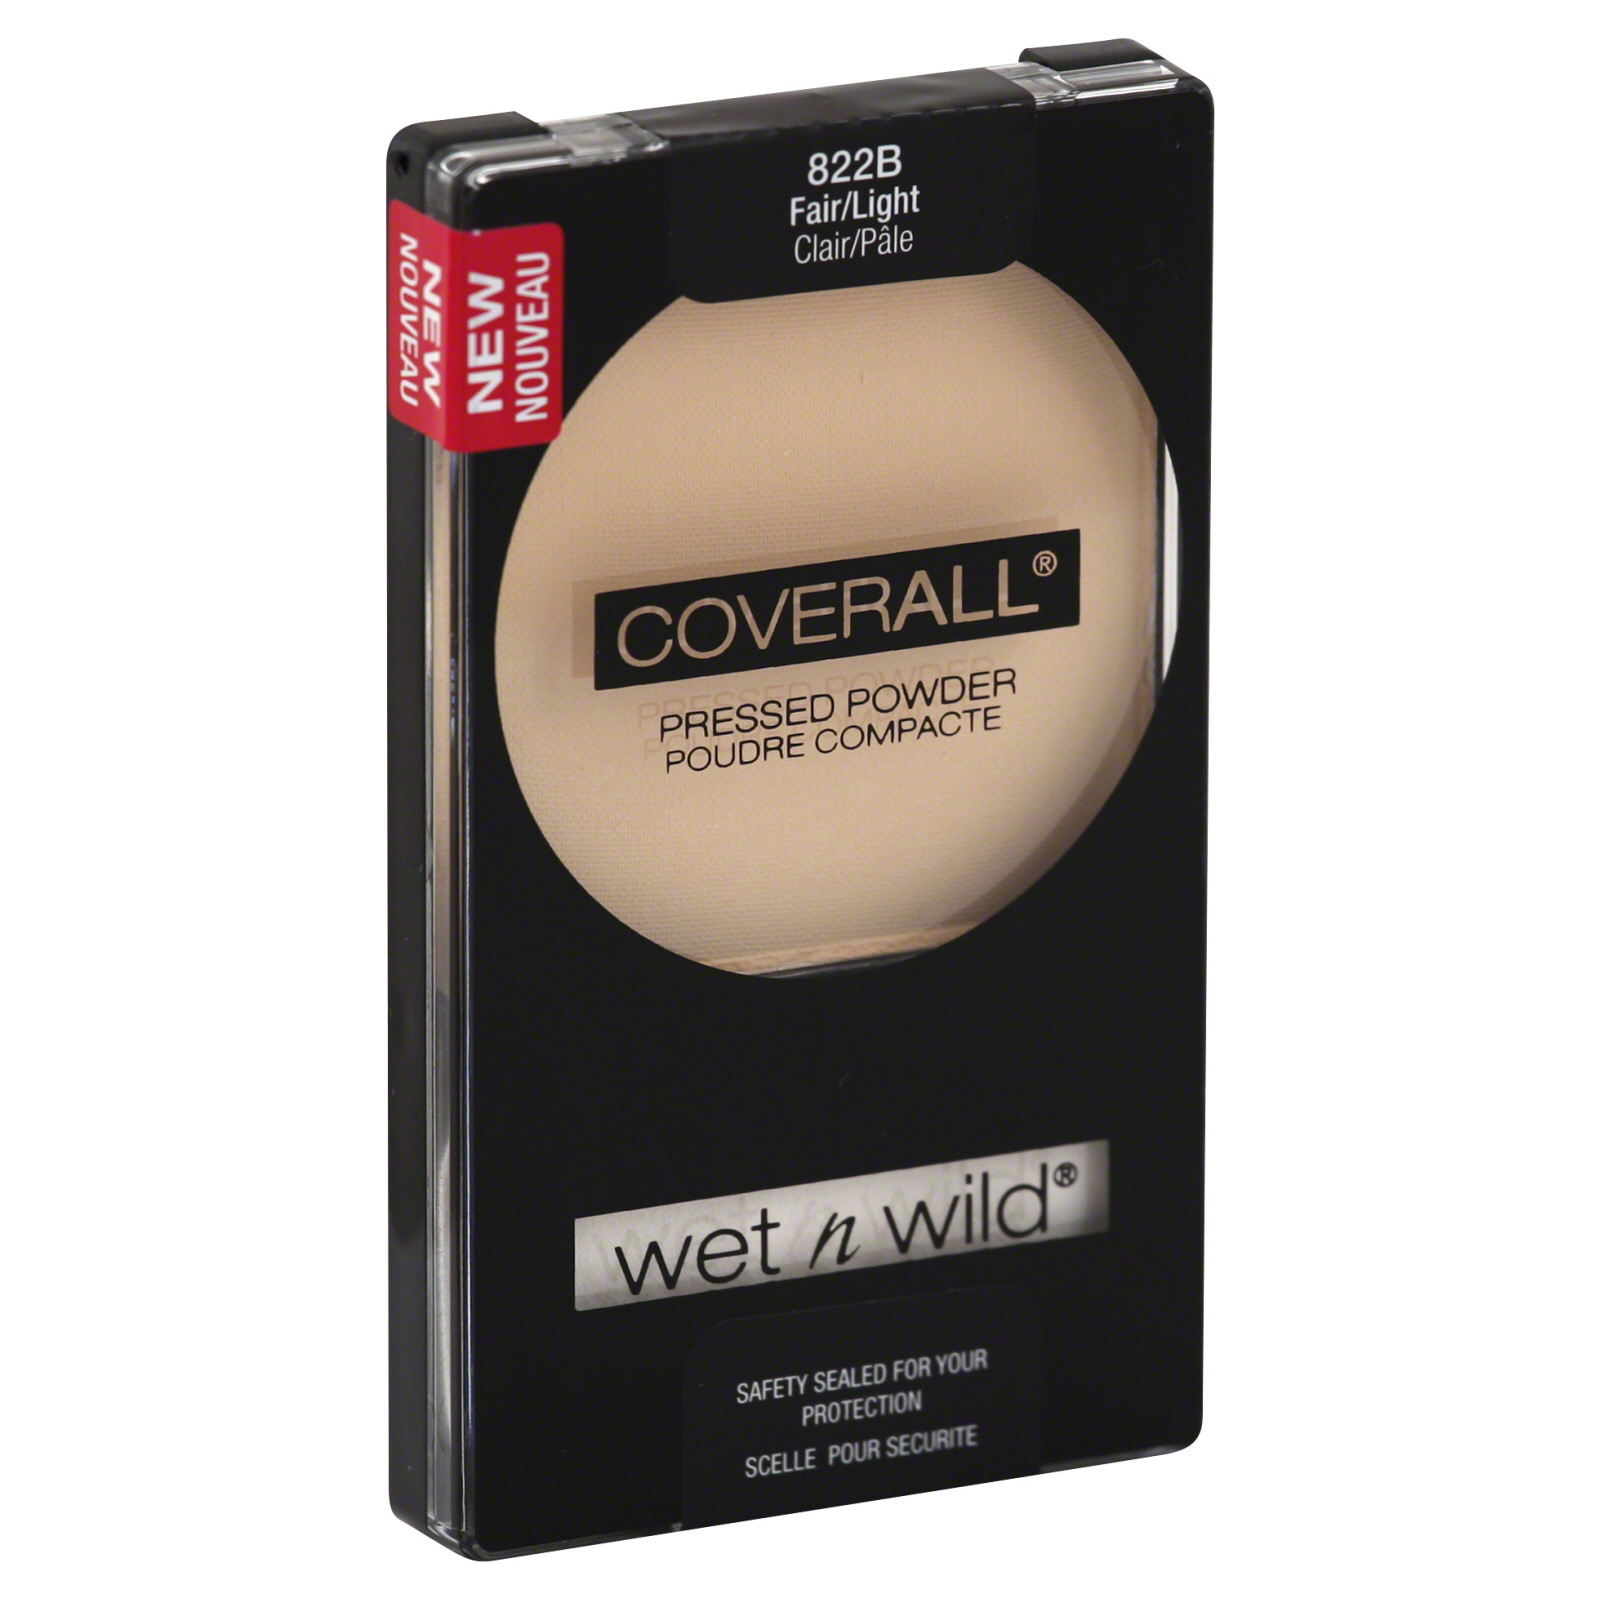 Wet n Wild Coverall Press Powder Fair Or Light 0.23 fl oz